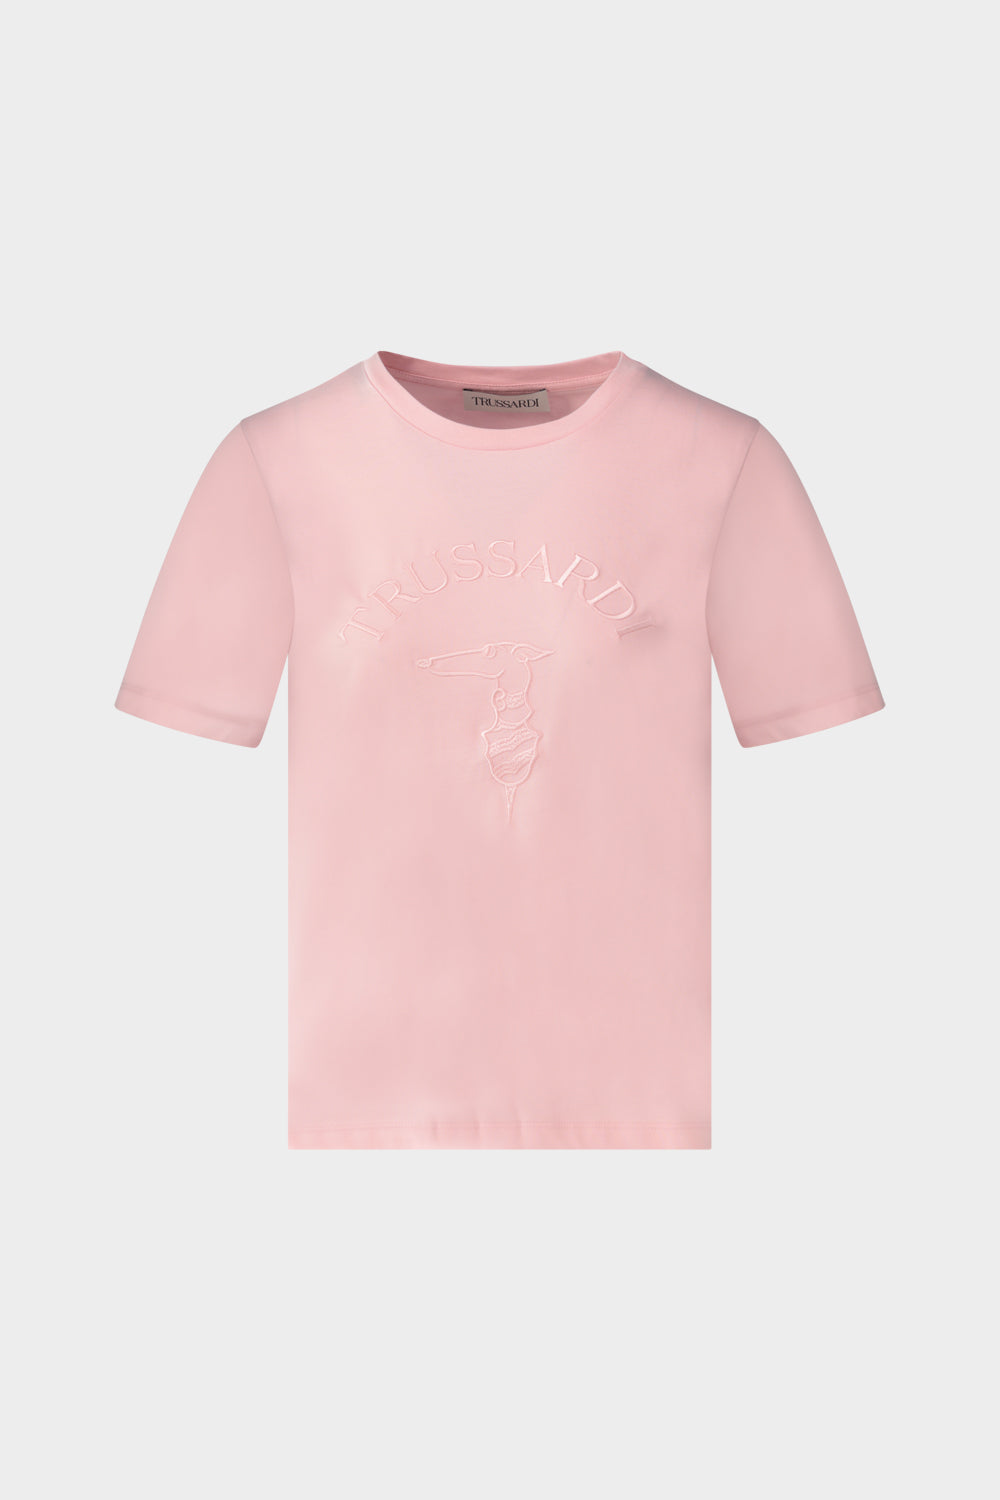 חולצת טי שירט לנשים רקמת לוגו TRUSSARDI TRUSSARDI Vendome online | ונדום .